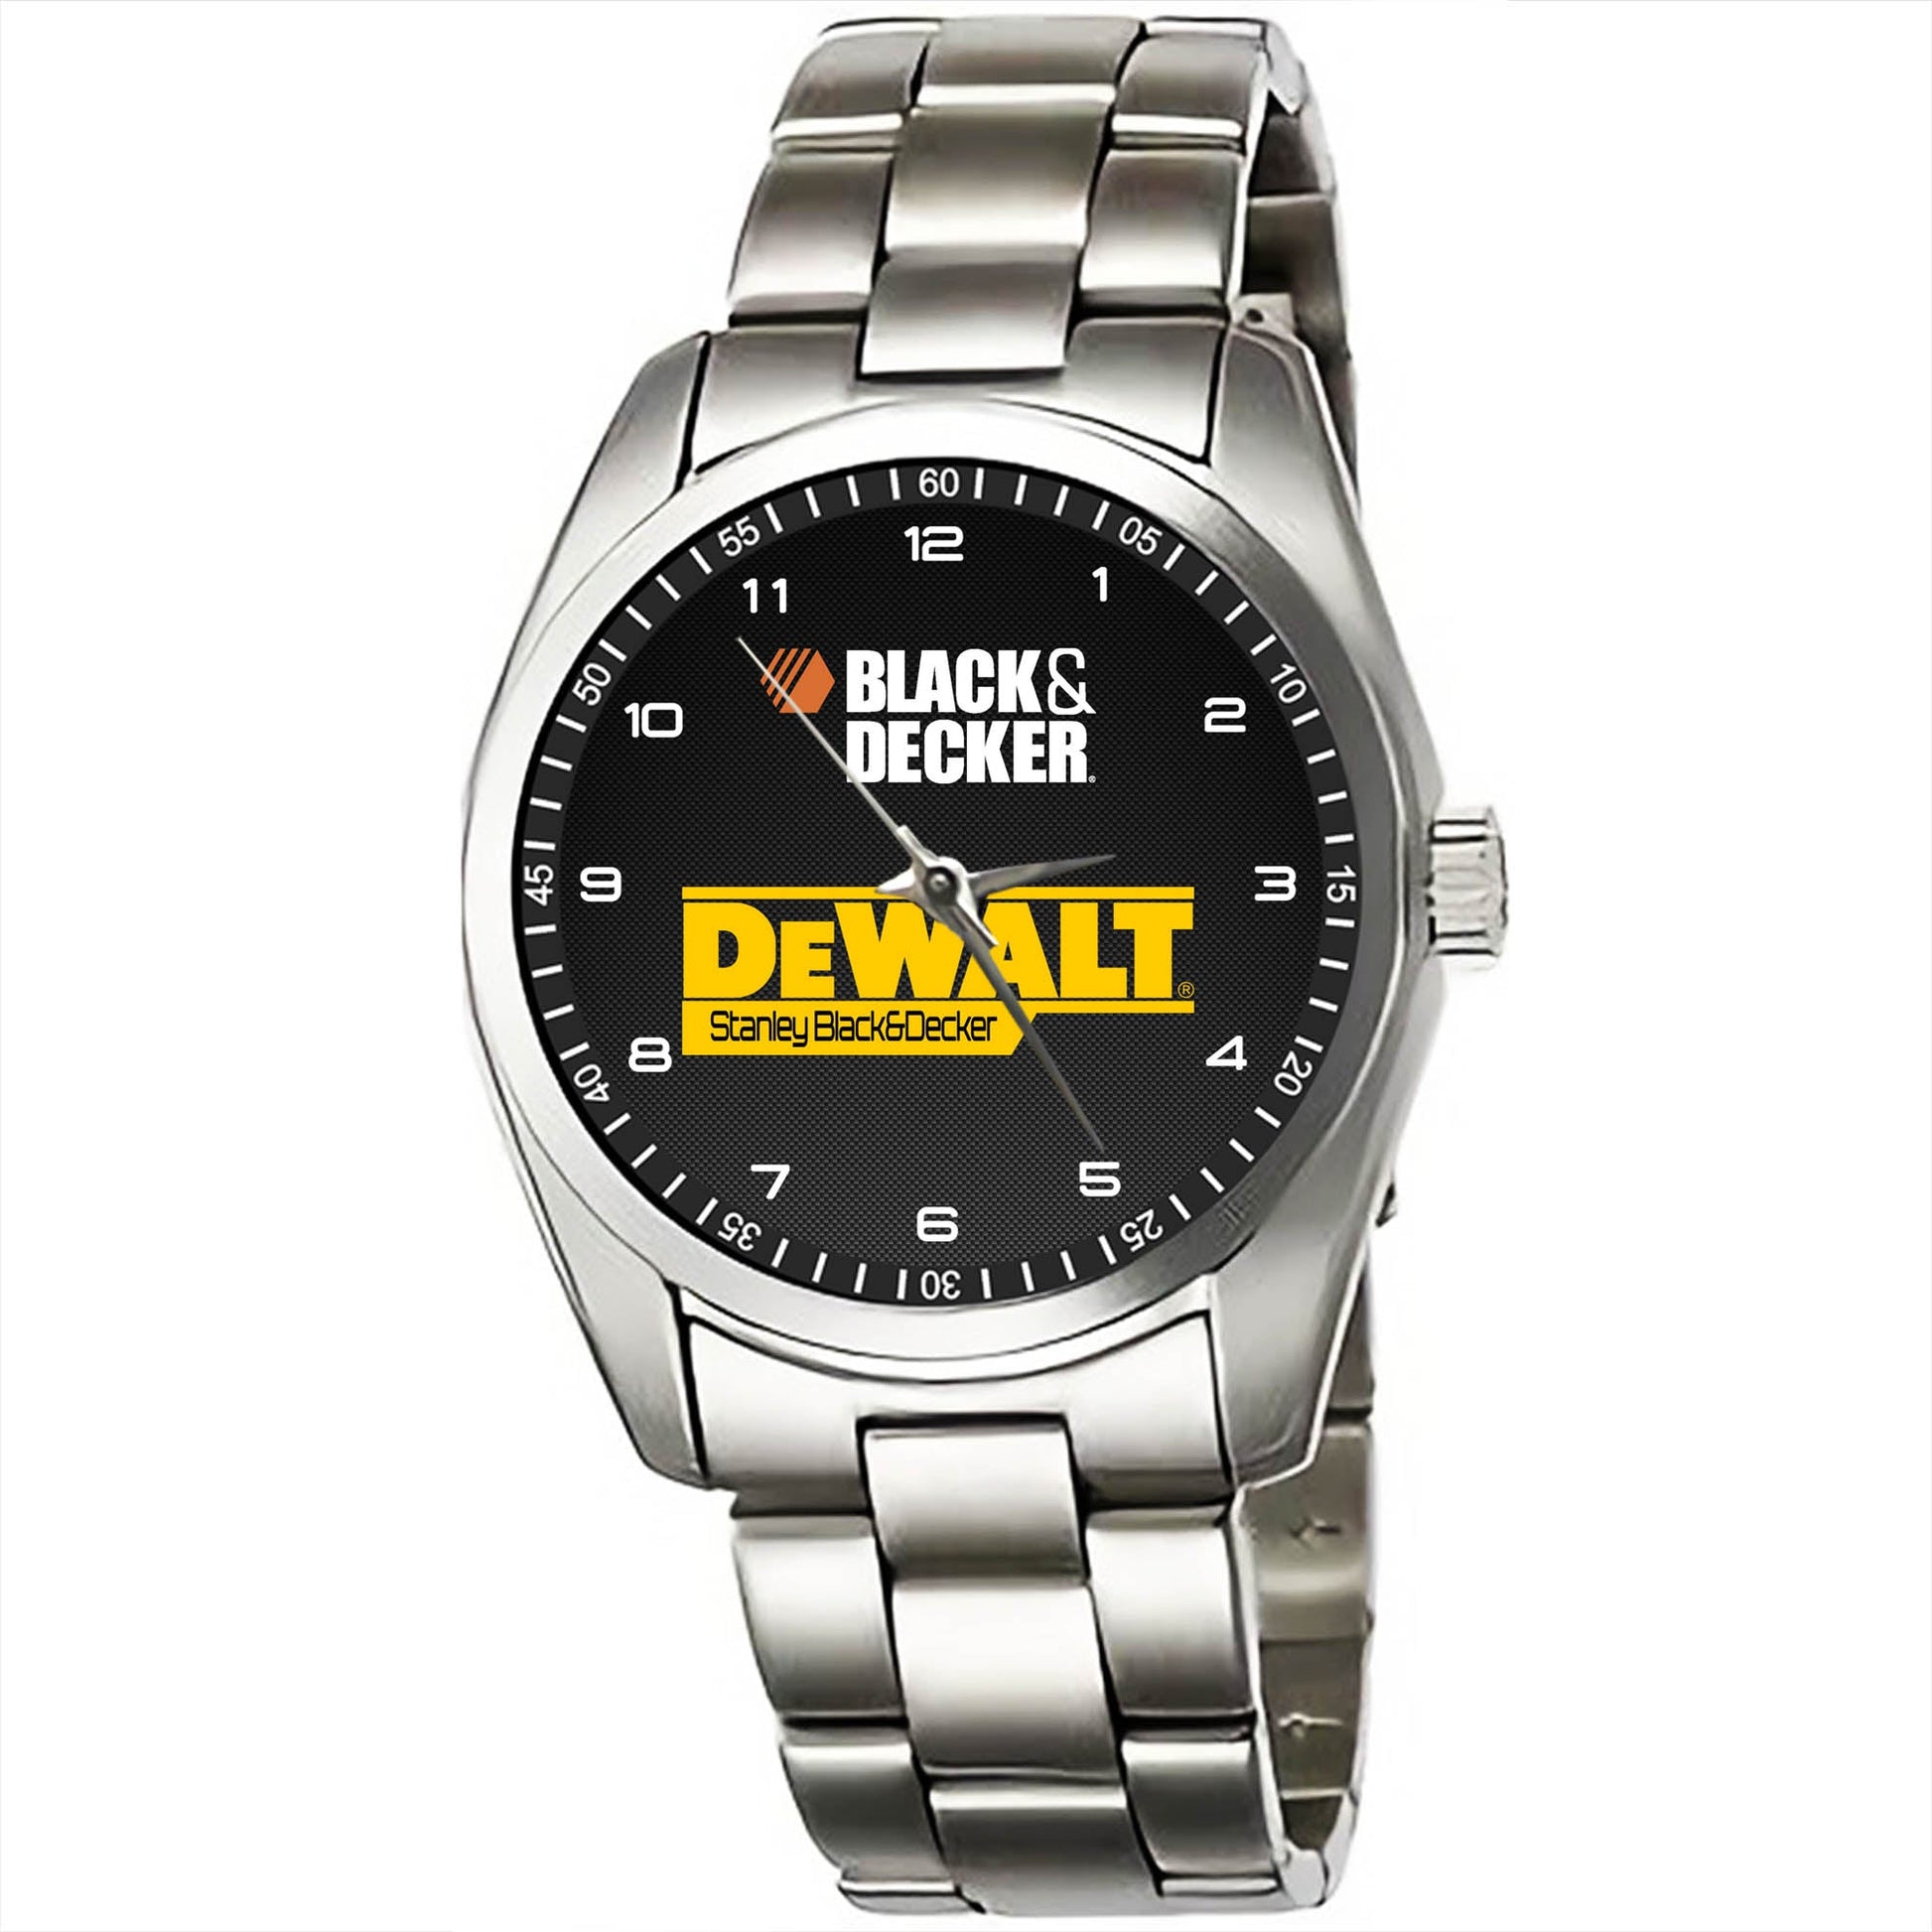 Dewalt Stanley Black & Decker Watches KP802